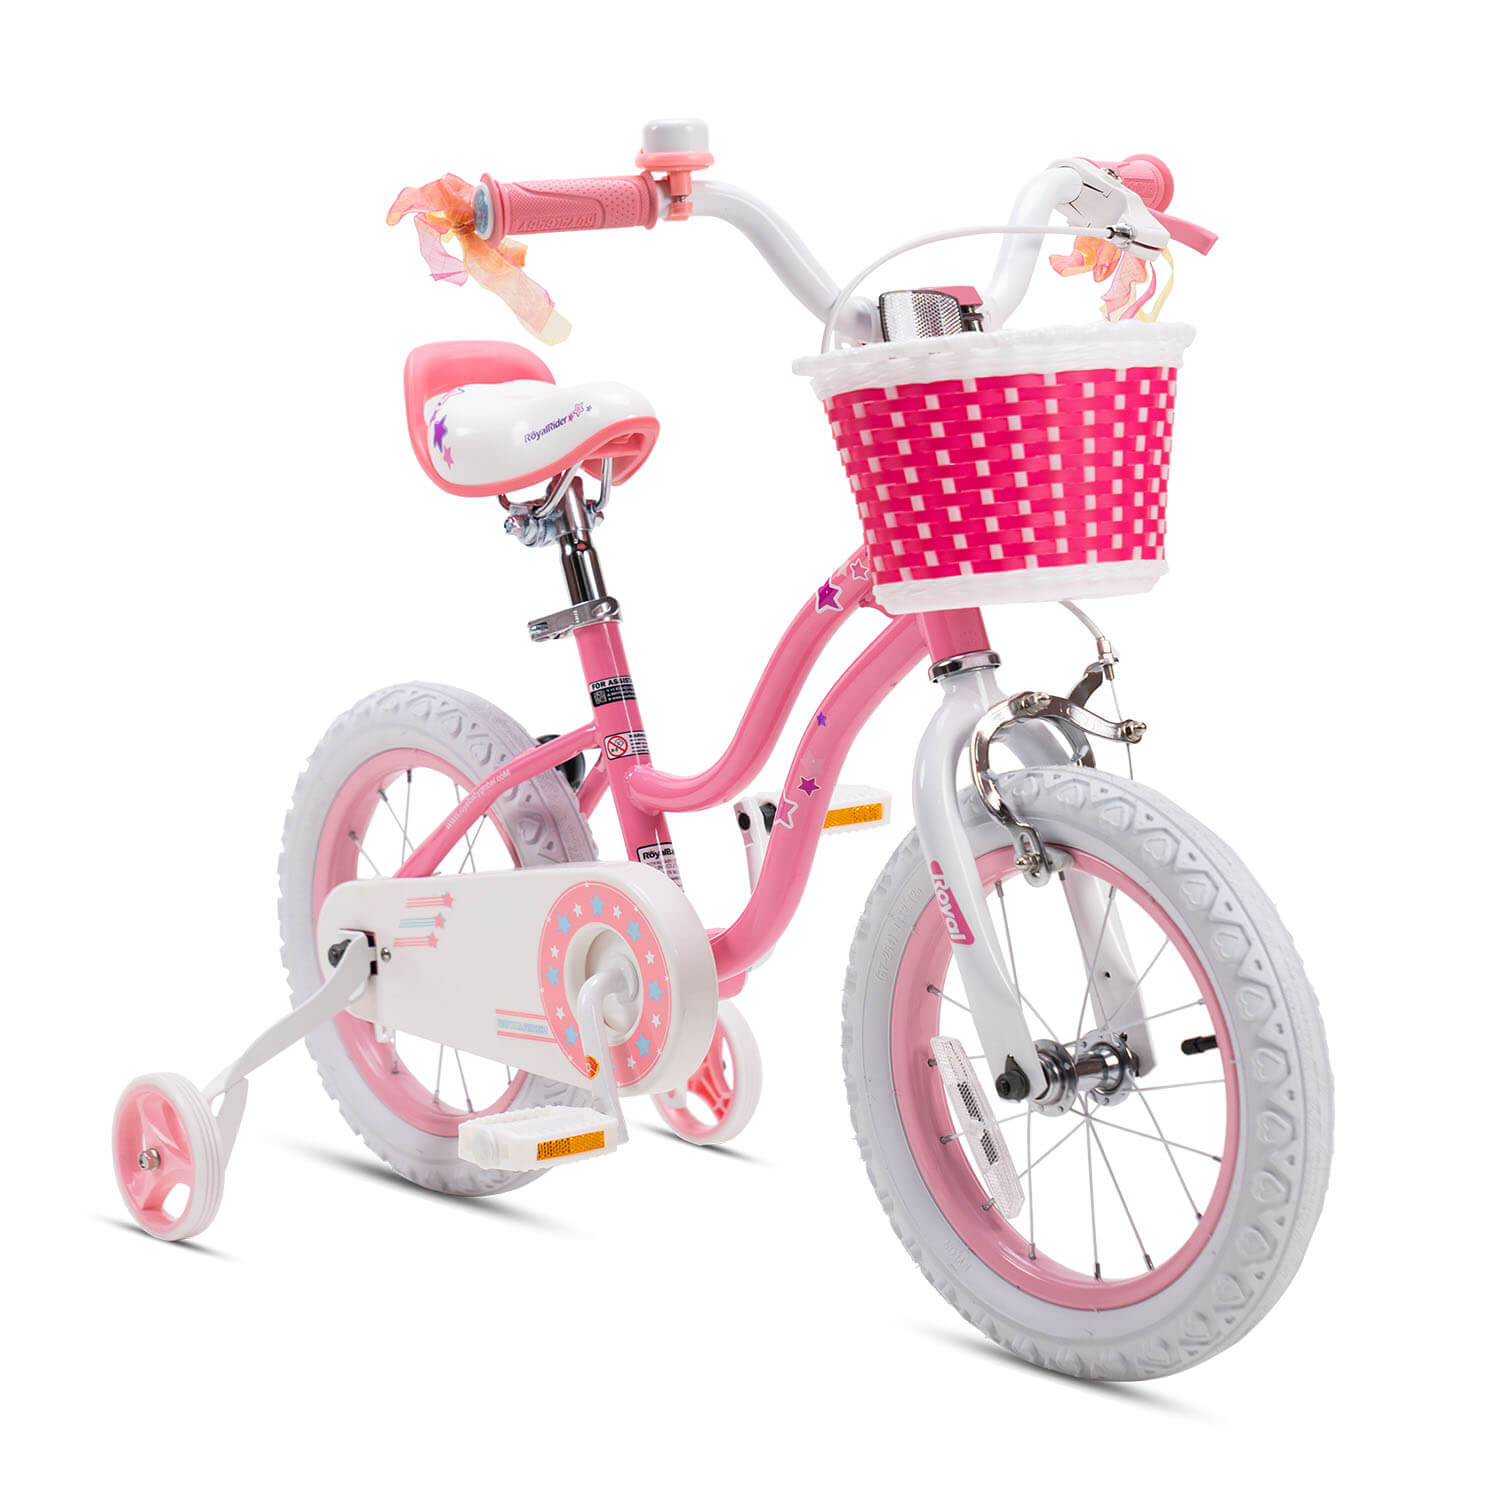 RoyalBaby Stargirl Kids Bike